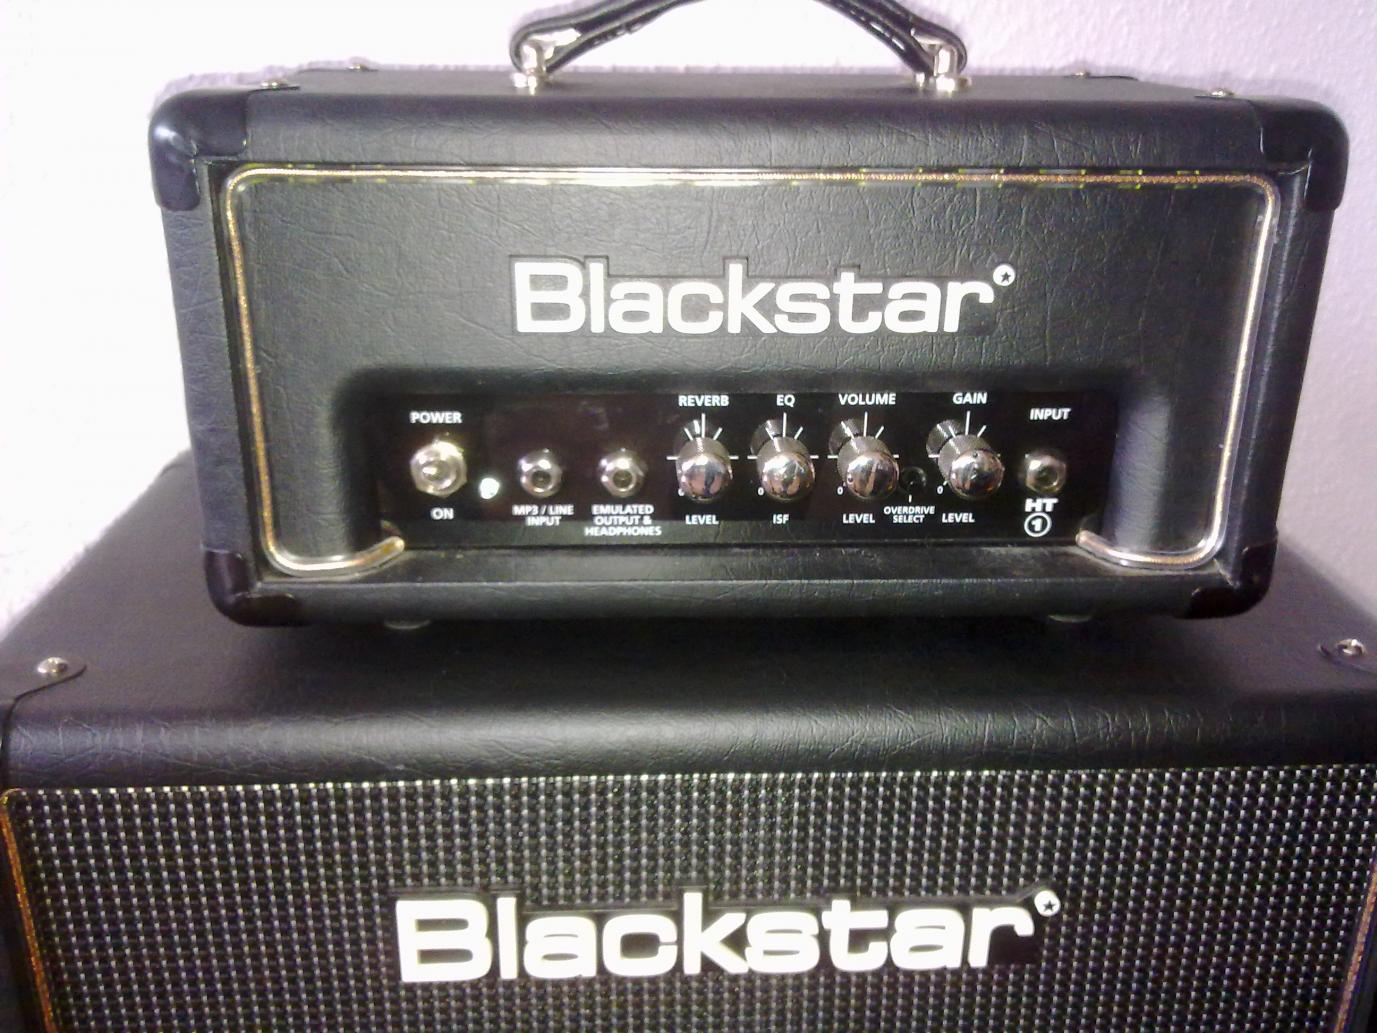 Blackstar HT1-R
Sehr dynamischer Amp und puristischer Aufbau

Klingt sehr gut braucht aber eine hell klingende Box wie die dazugehörende mit Celestion 70/80

Wegen Überschuss aber wieder verkauft